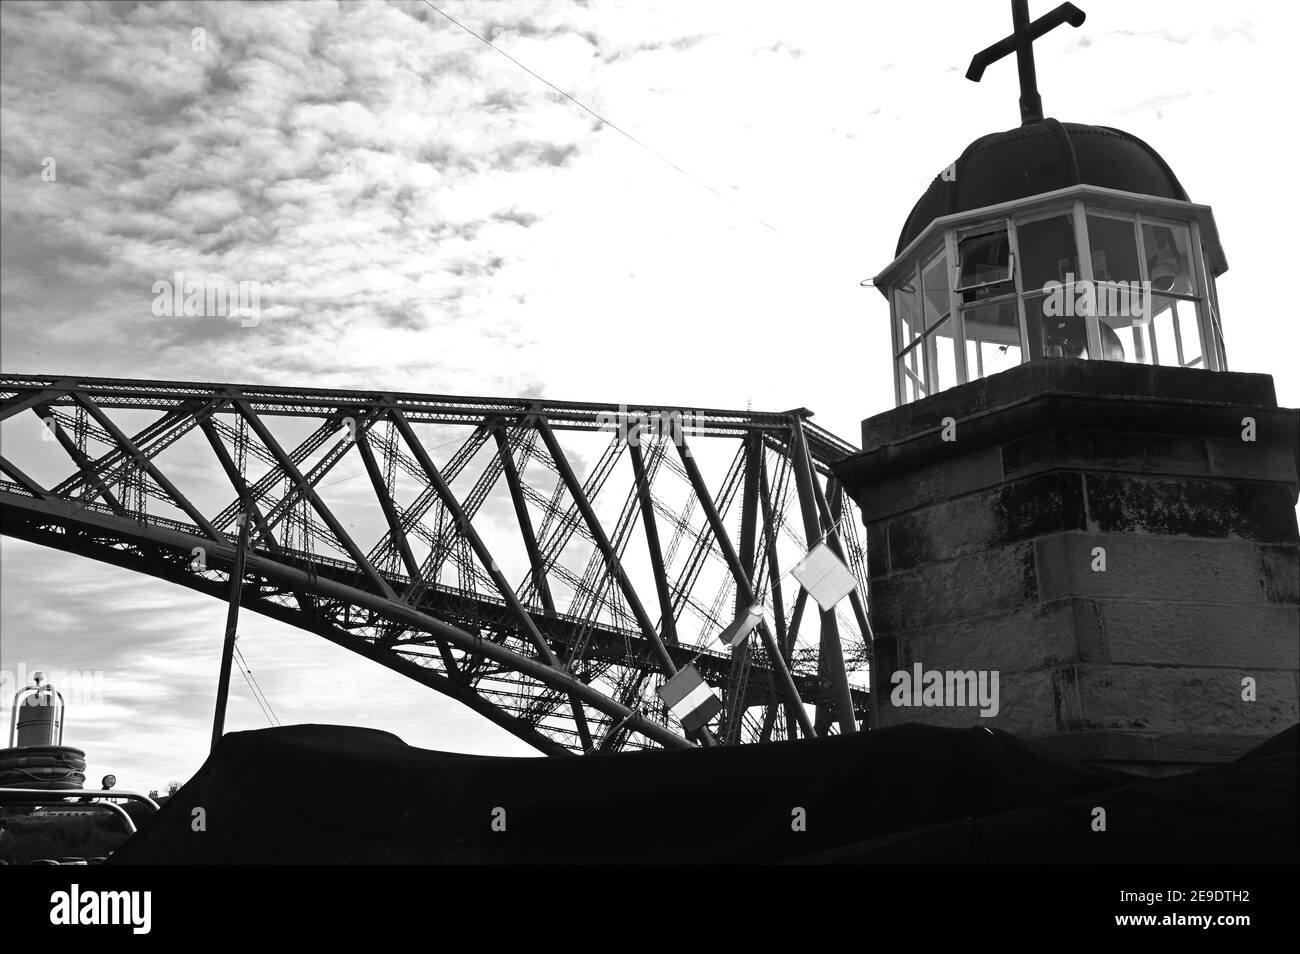 Una vista dello storico e iconico ponte ferroviario di Forth che si estende sul Forth Estuary in Scozia. Foto Stock